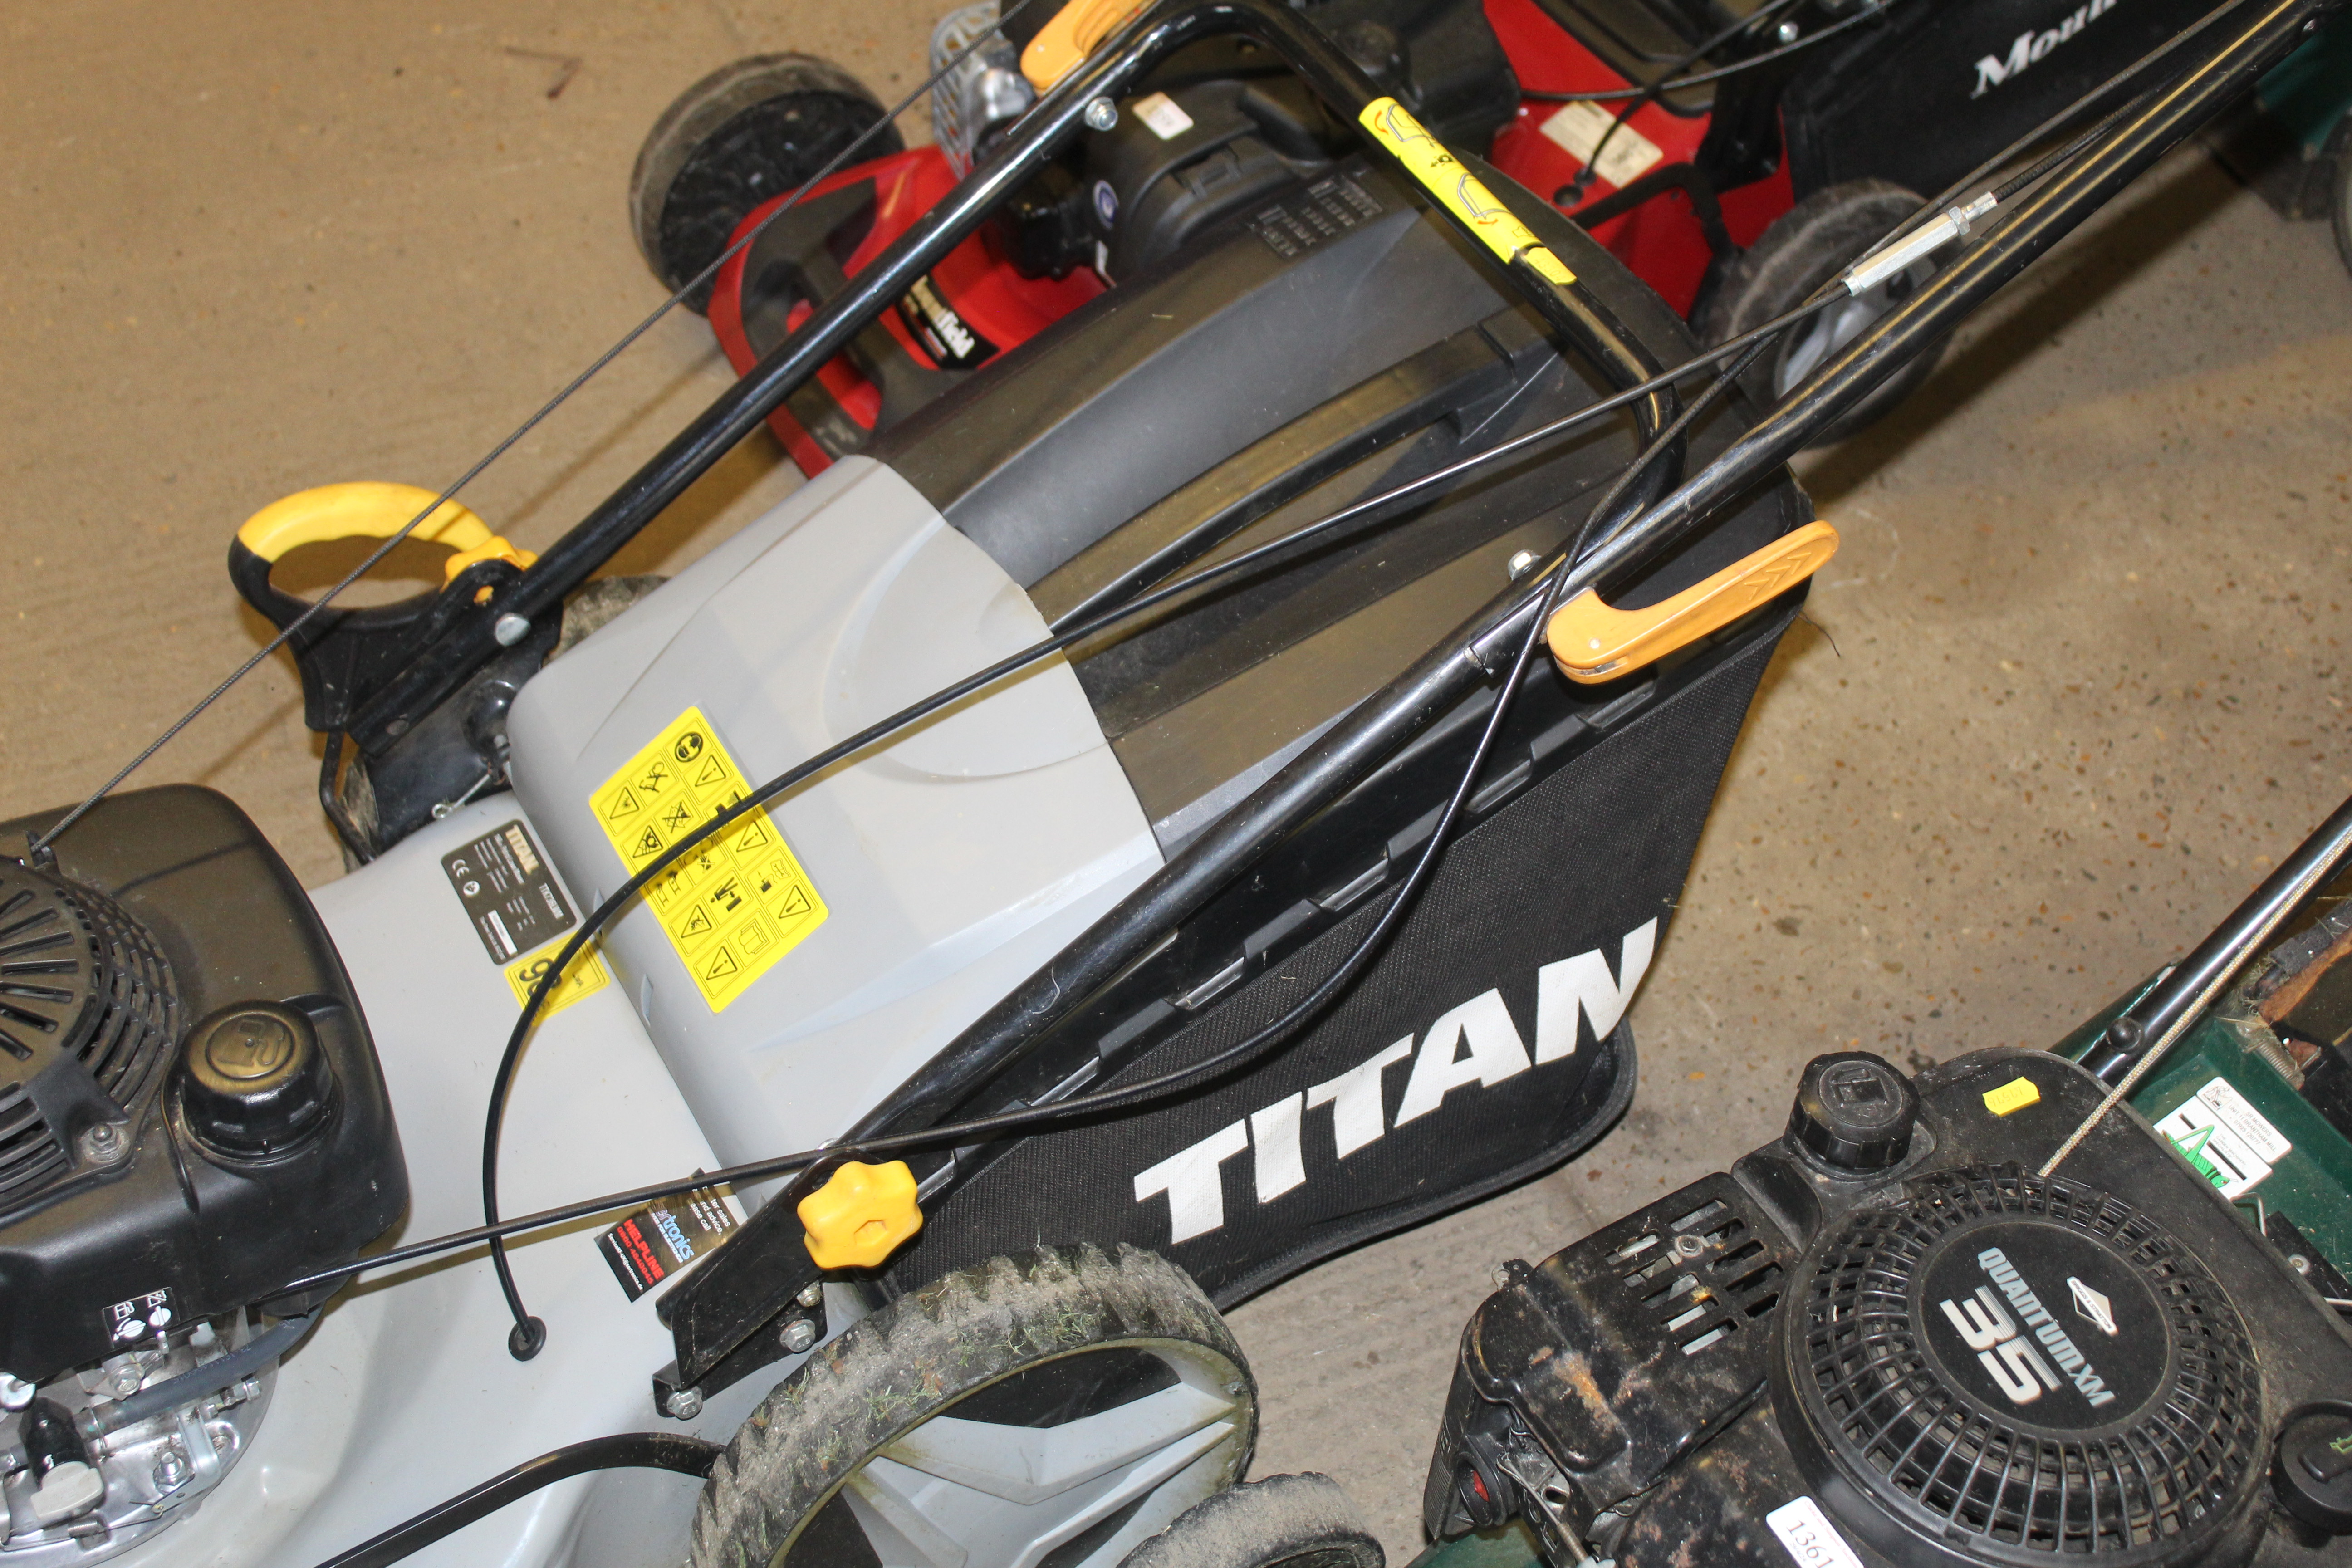 A Titan TTK736LWM self propelled petrol lawnmower - Image 5 of 5